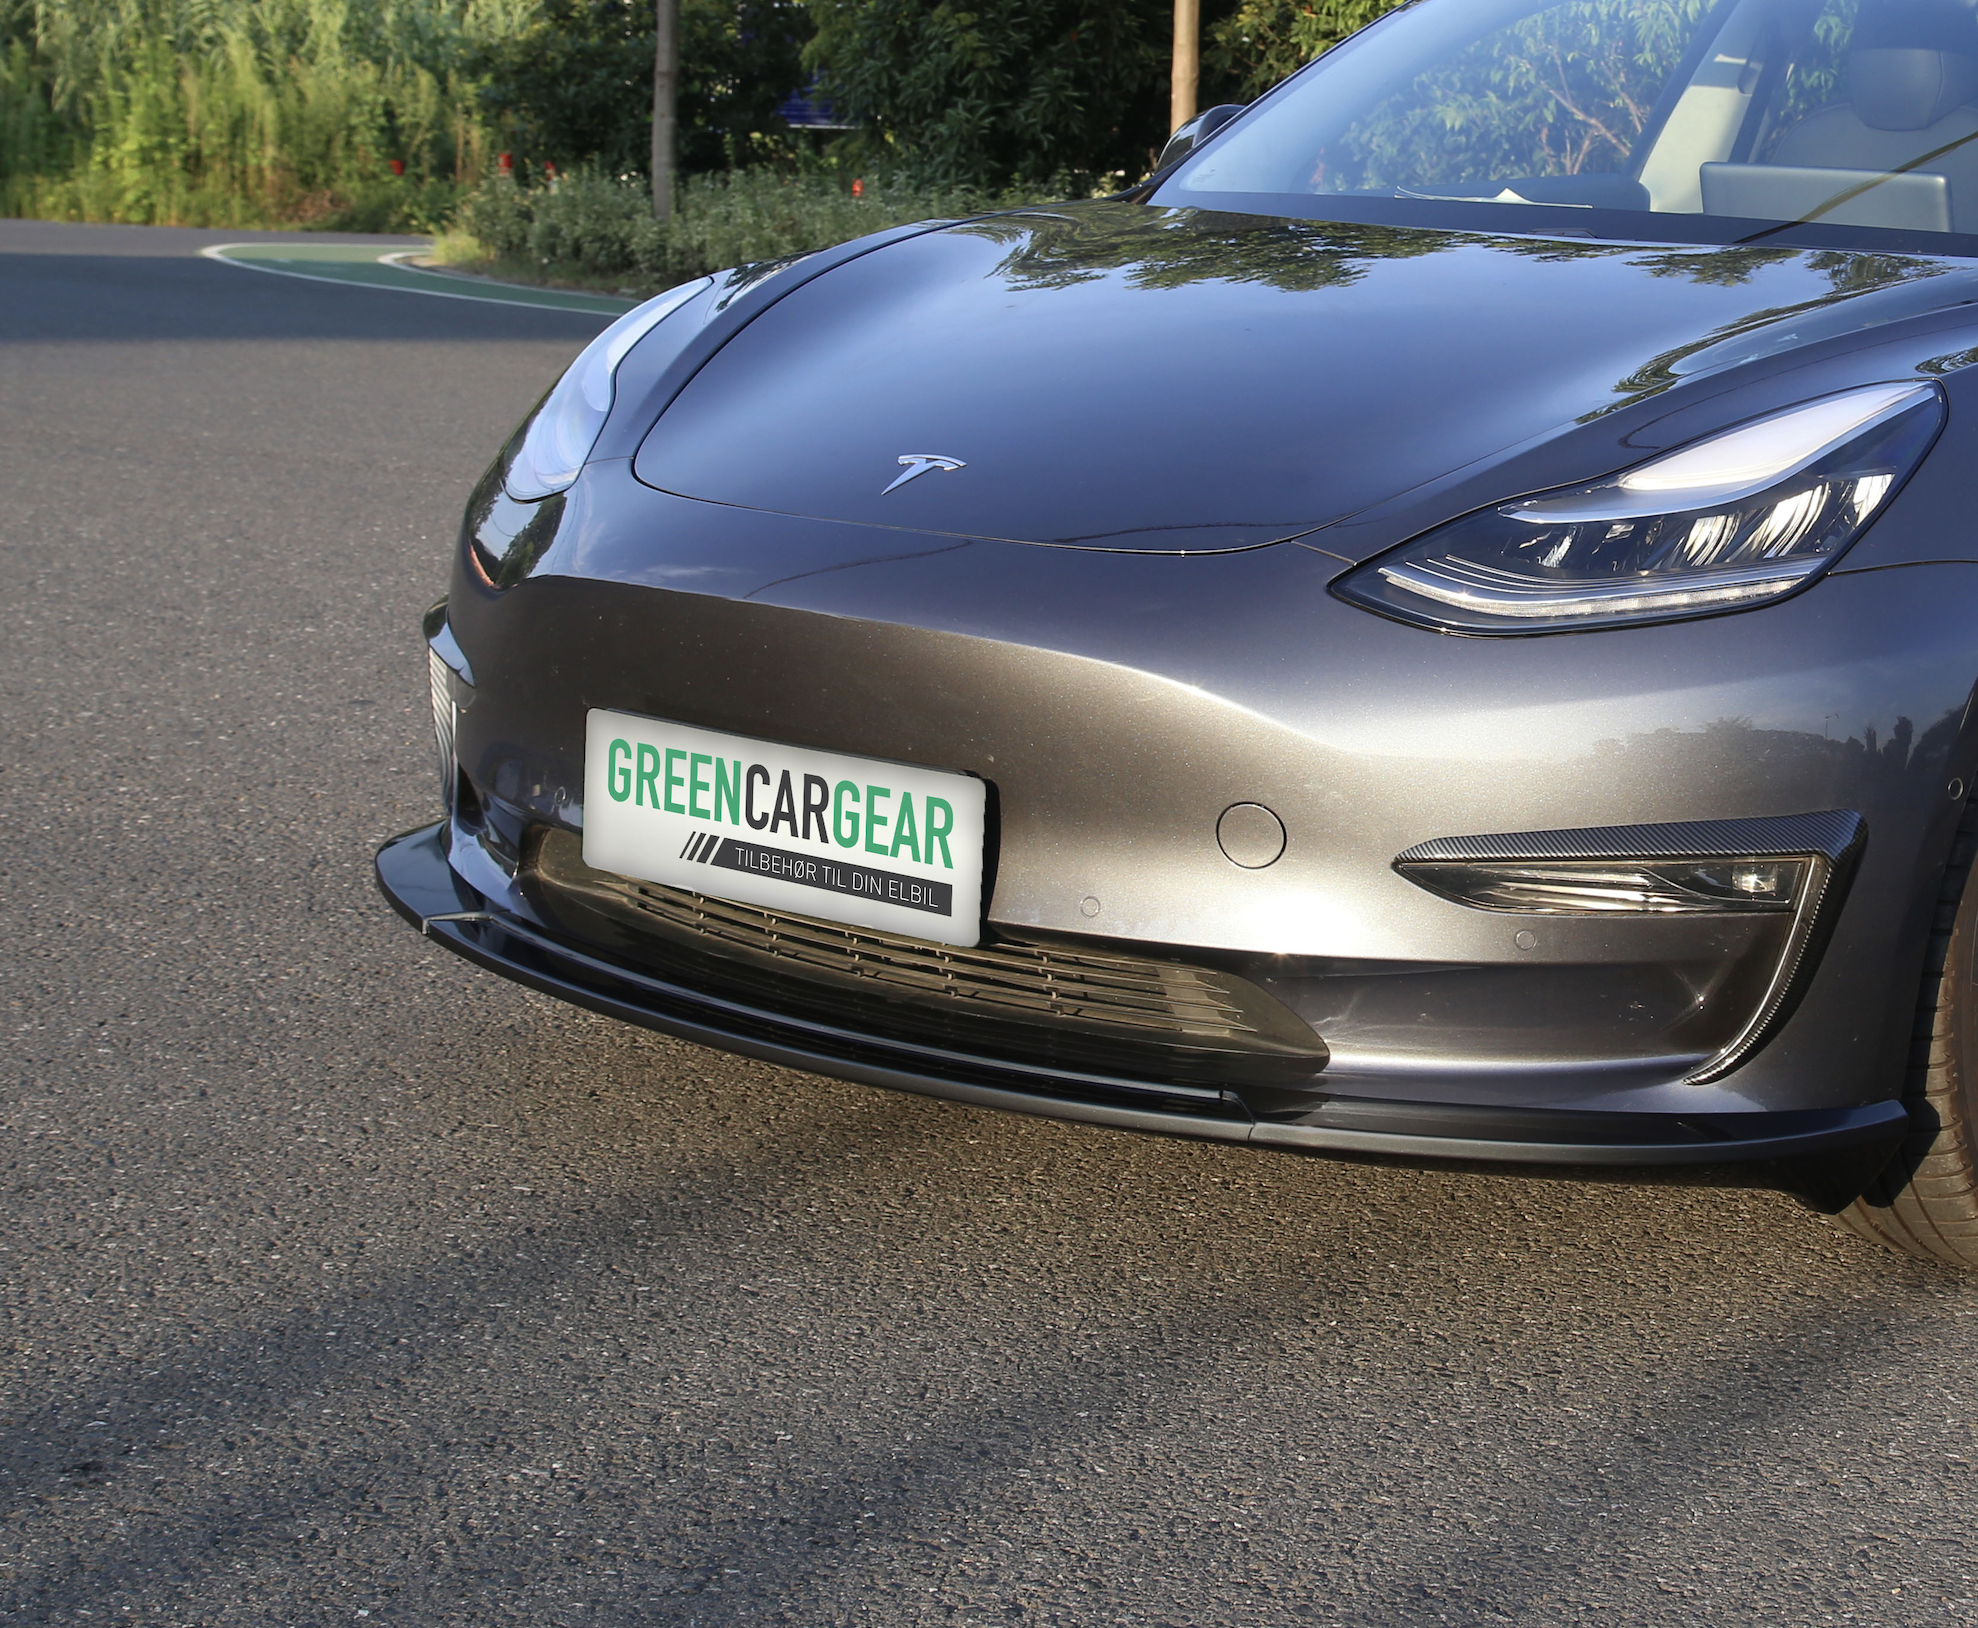 Komplet bodykit i mat sort - Passer til Tesla Model 3